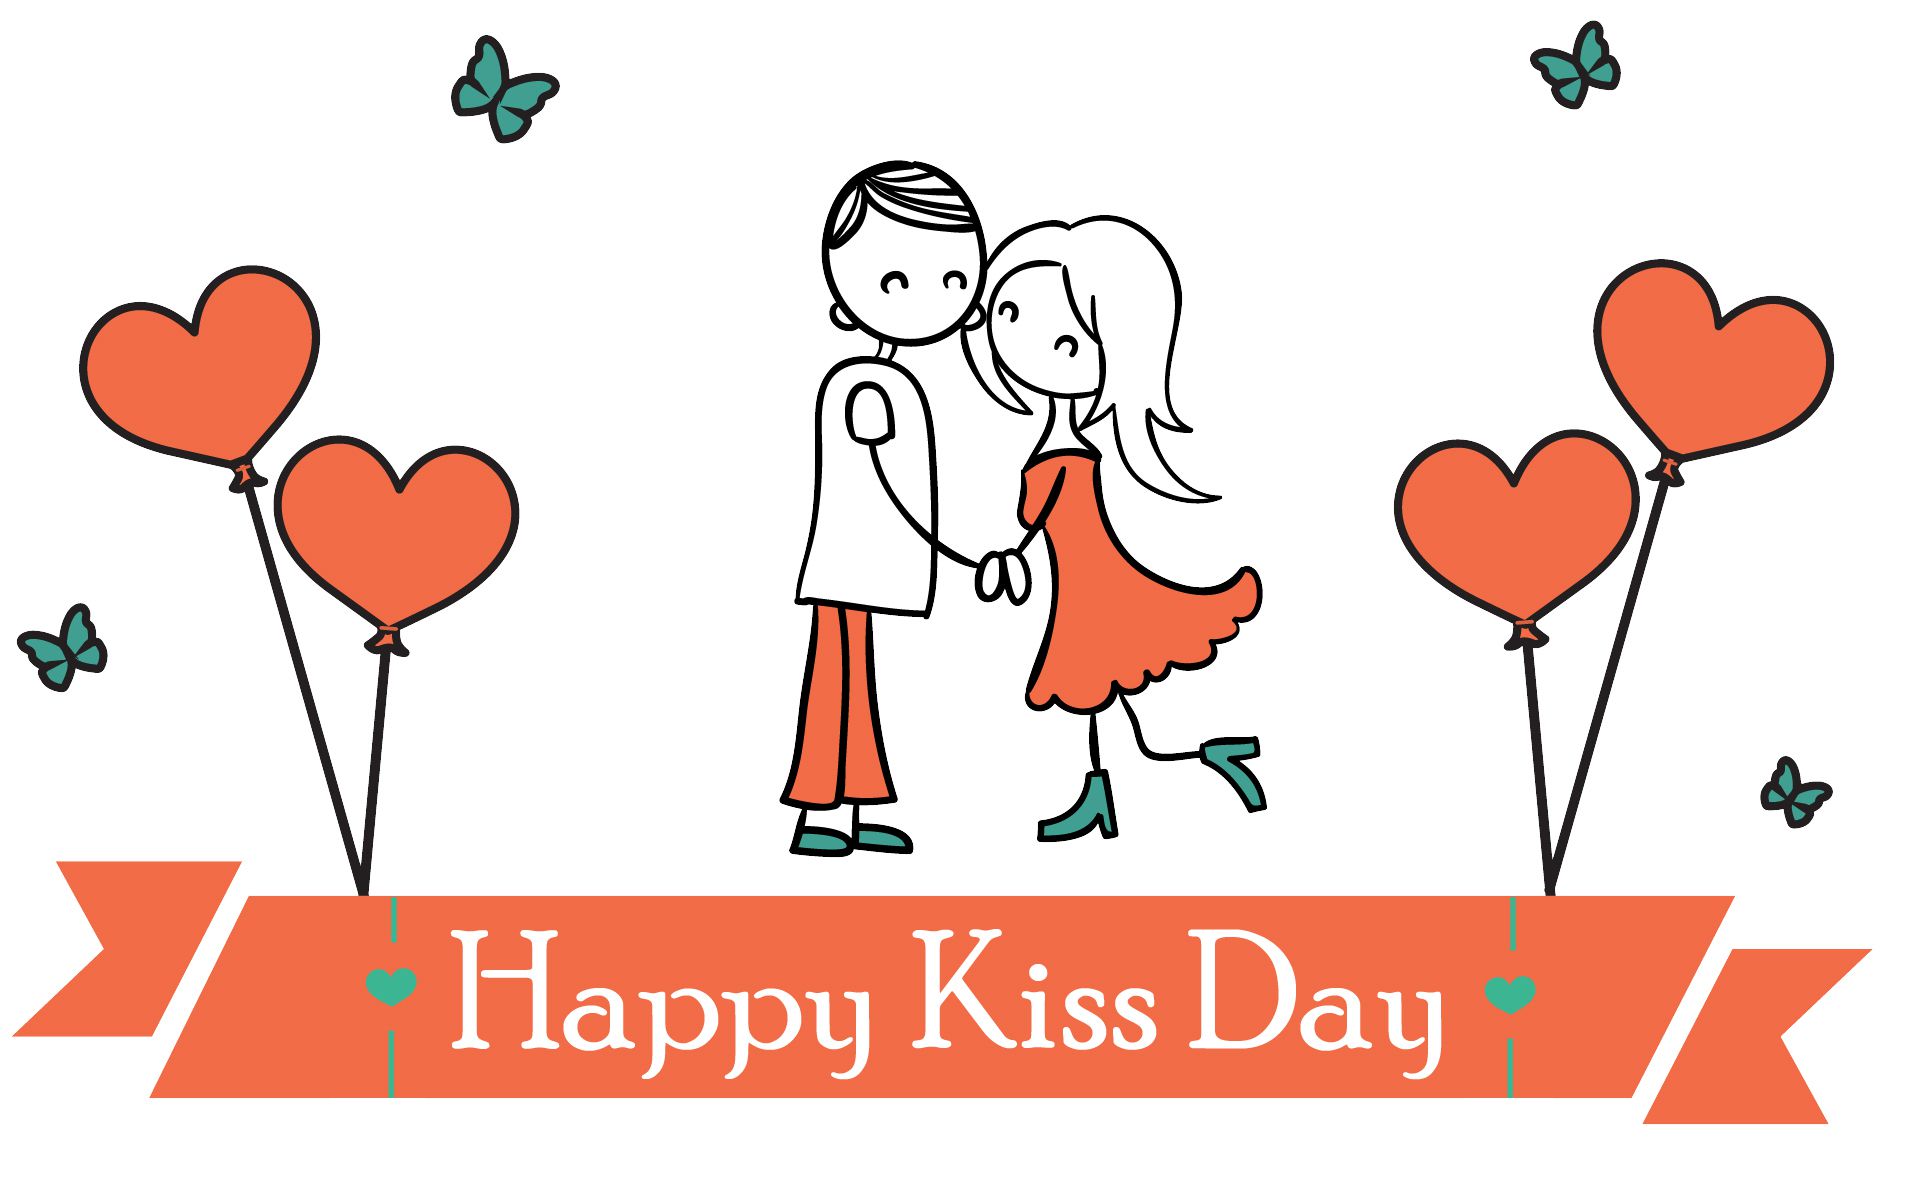 Kiss Day Wallpaper for Mobile & Desktop